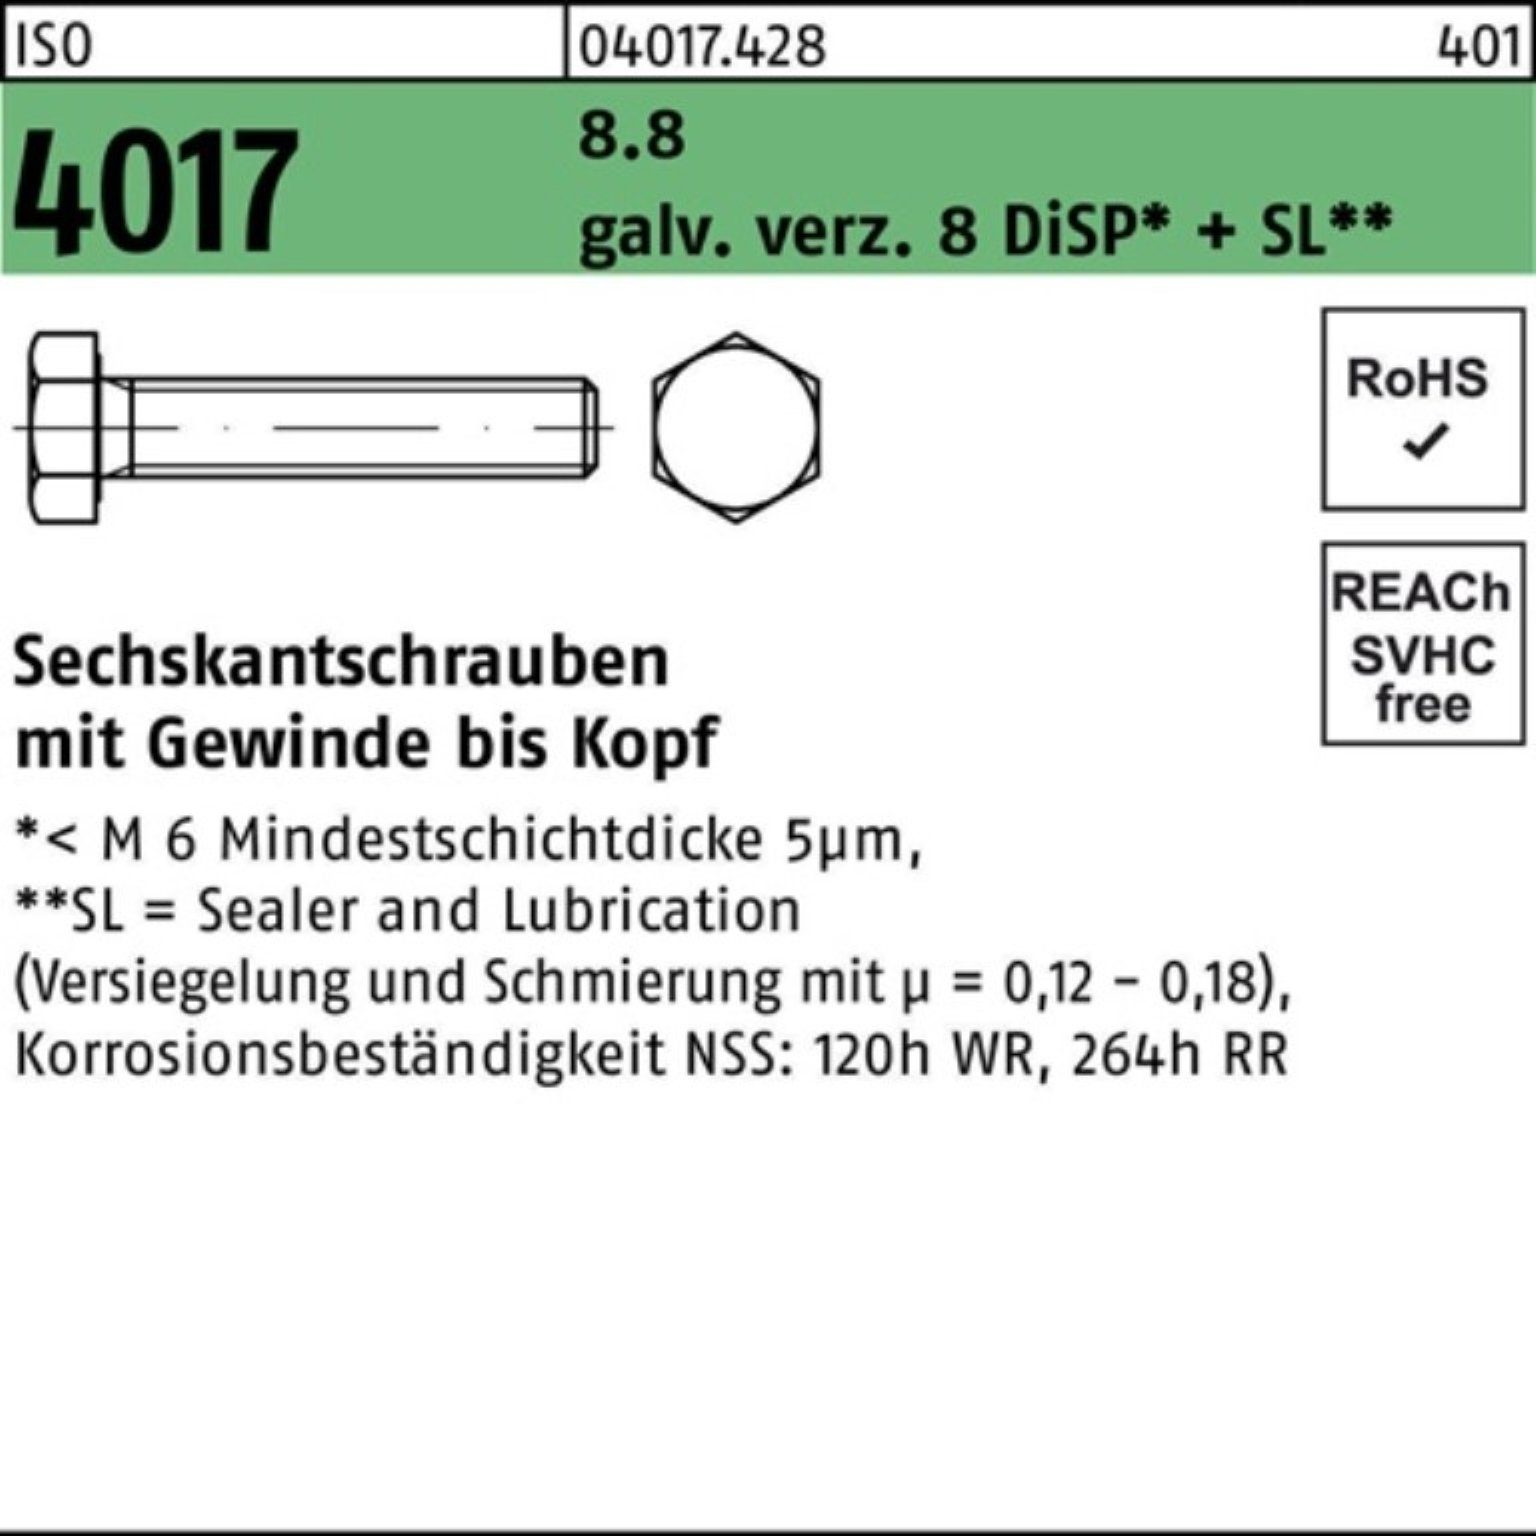 galv.verz. VG M8x 8 Sechskantschraube 100er 8.8 Bufab 90 DiSP+ Sechskantschraube 4017 ISO Pack